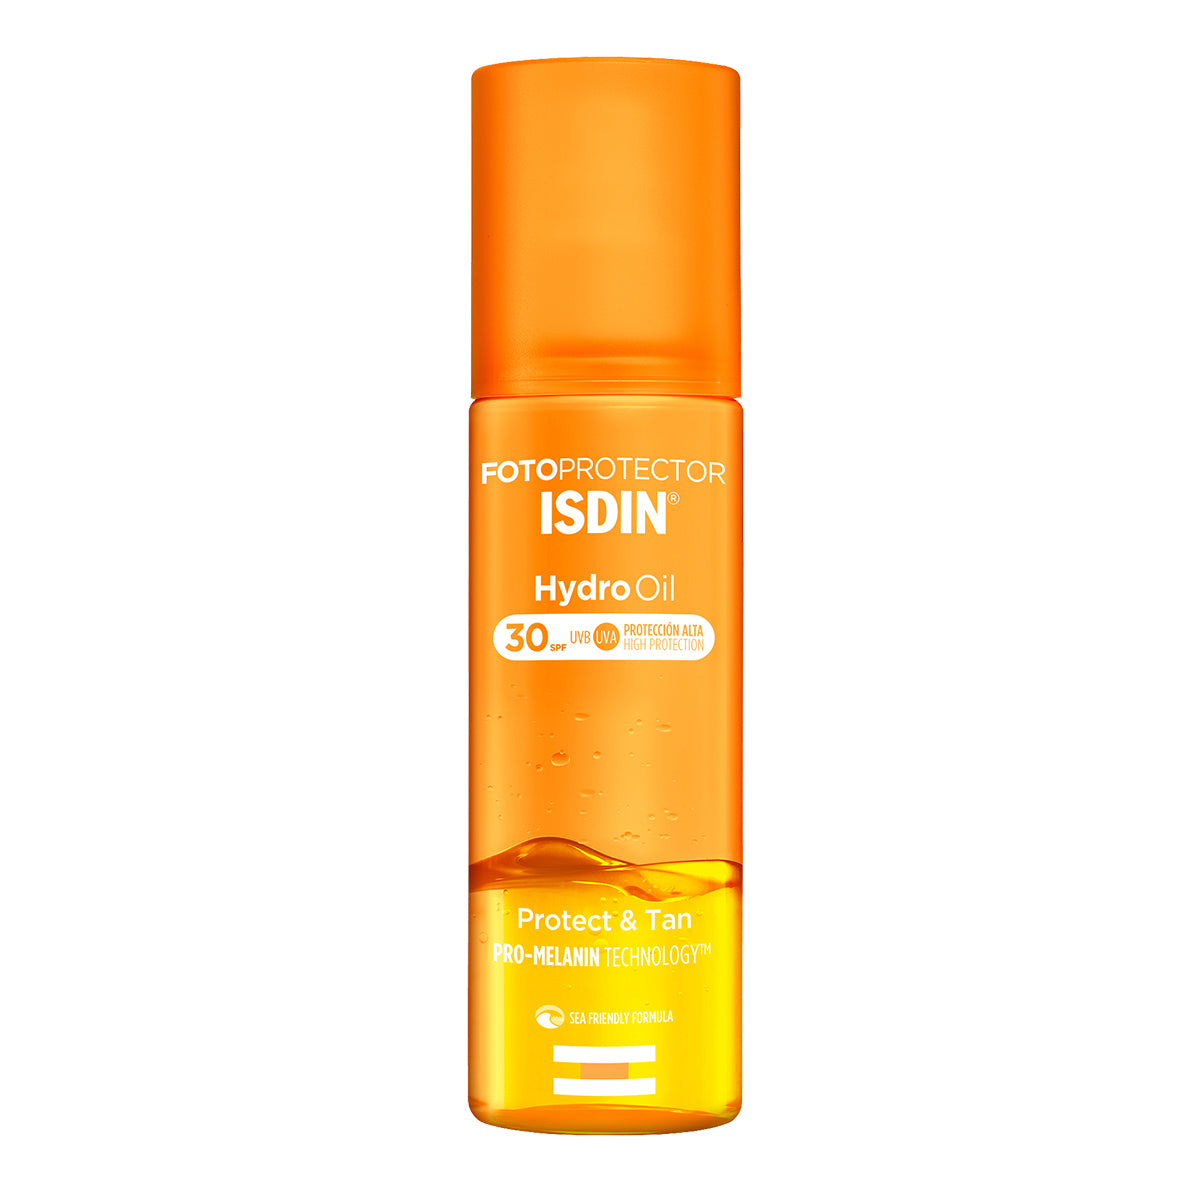 Isdin Fotoprotector Isdin Hydro Oil SPF 30, bifásico que protege y broncea la piel 200ml.